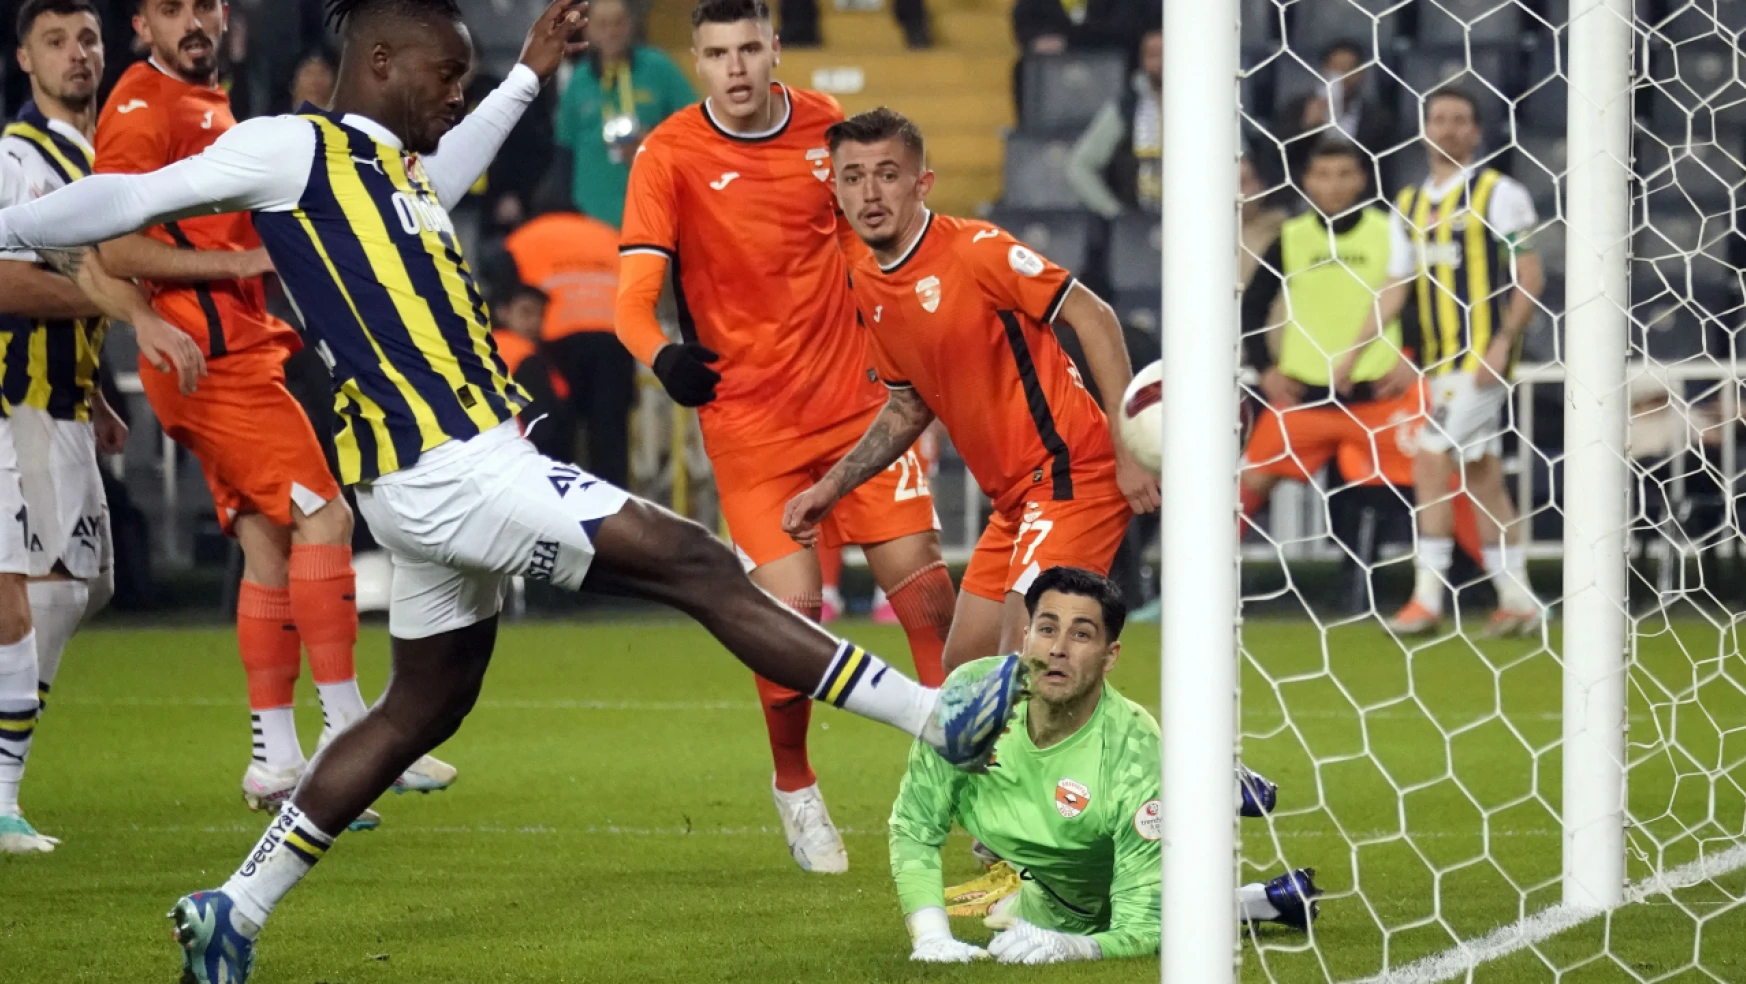 Ziraat Türkiye Kupası: Fenerbahçe: 6 - Adanaspor: 0 (Maç sonucu)